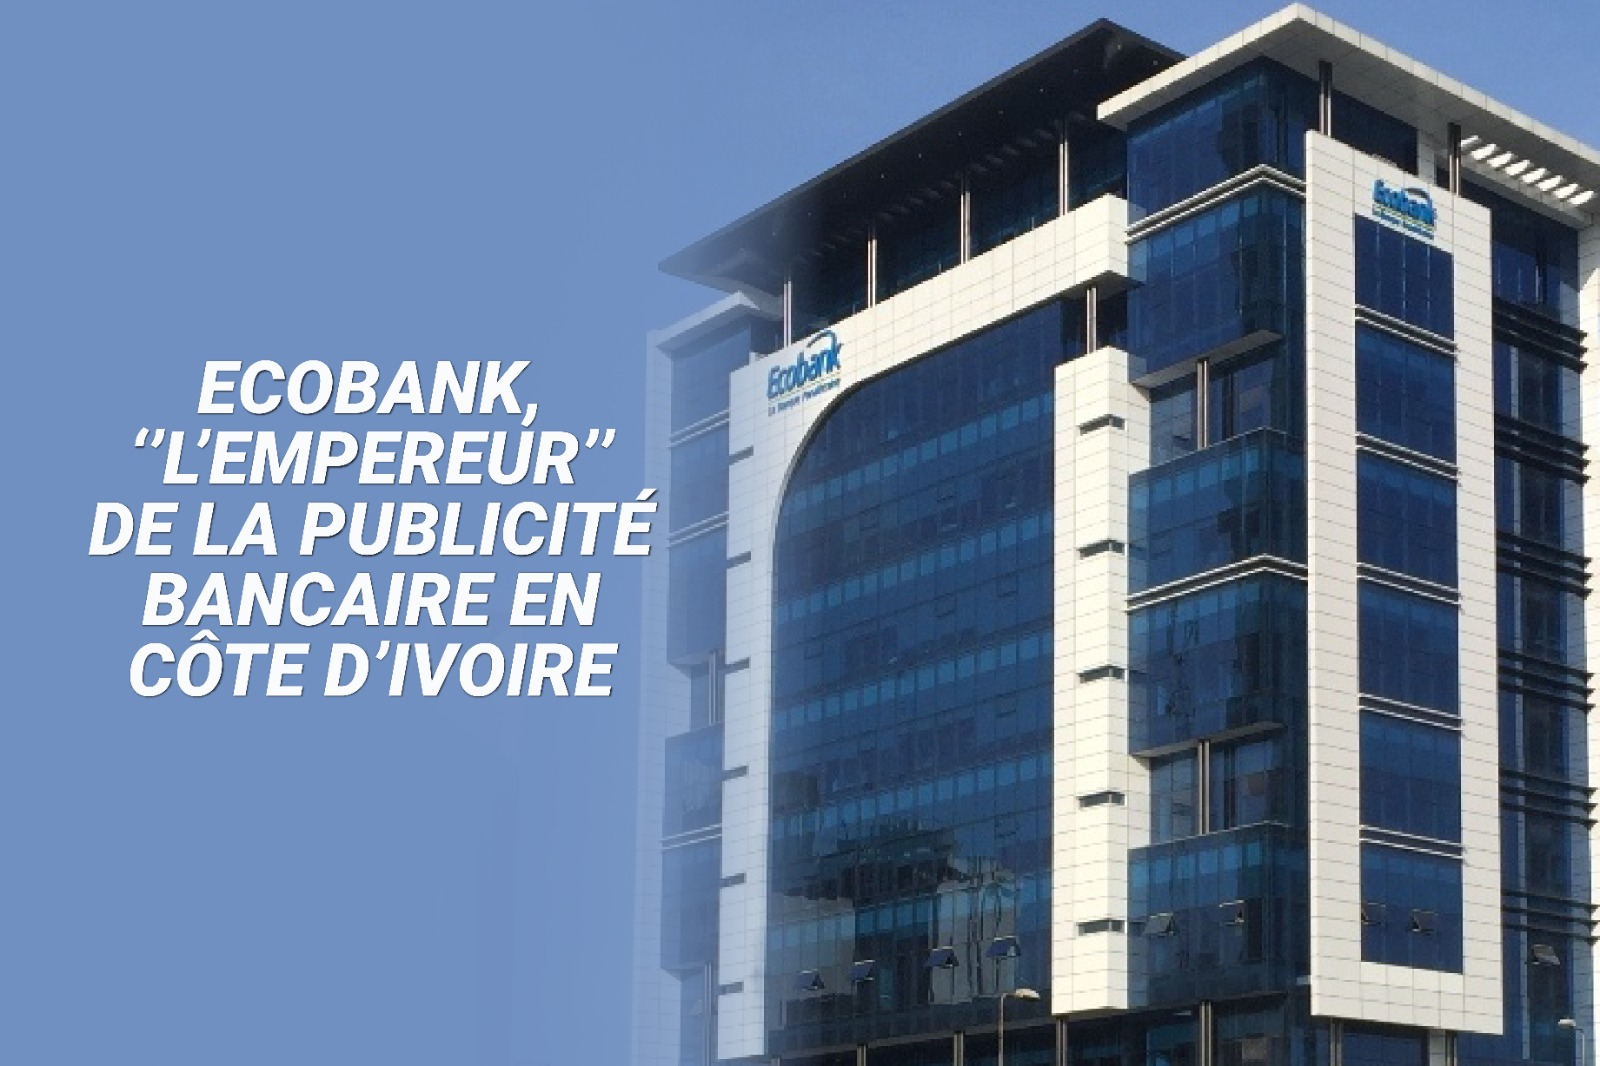 Communication : Ecobank, ‘’l’empereur’’ de la publicité bancaire en Côte d’Ivoire